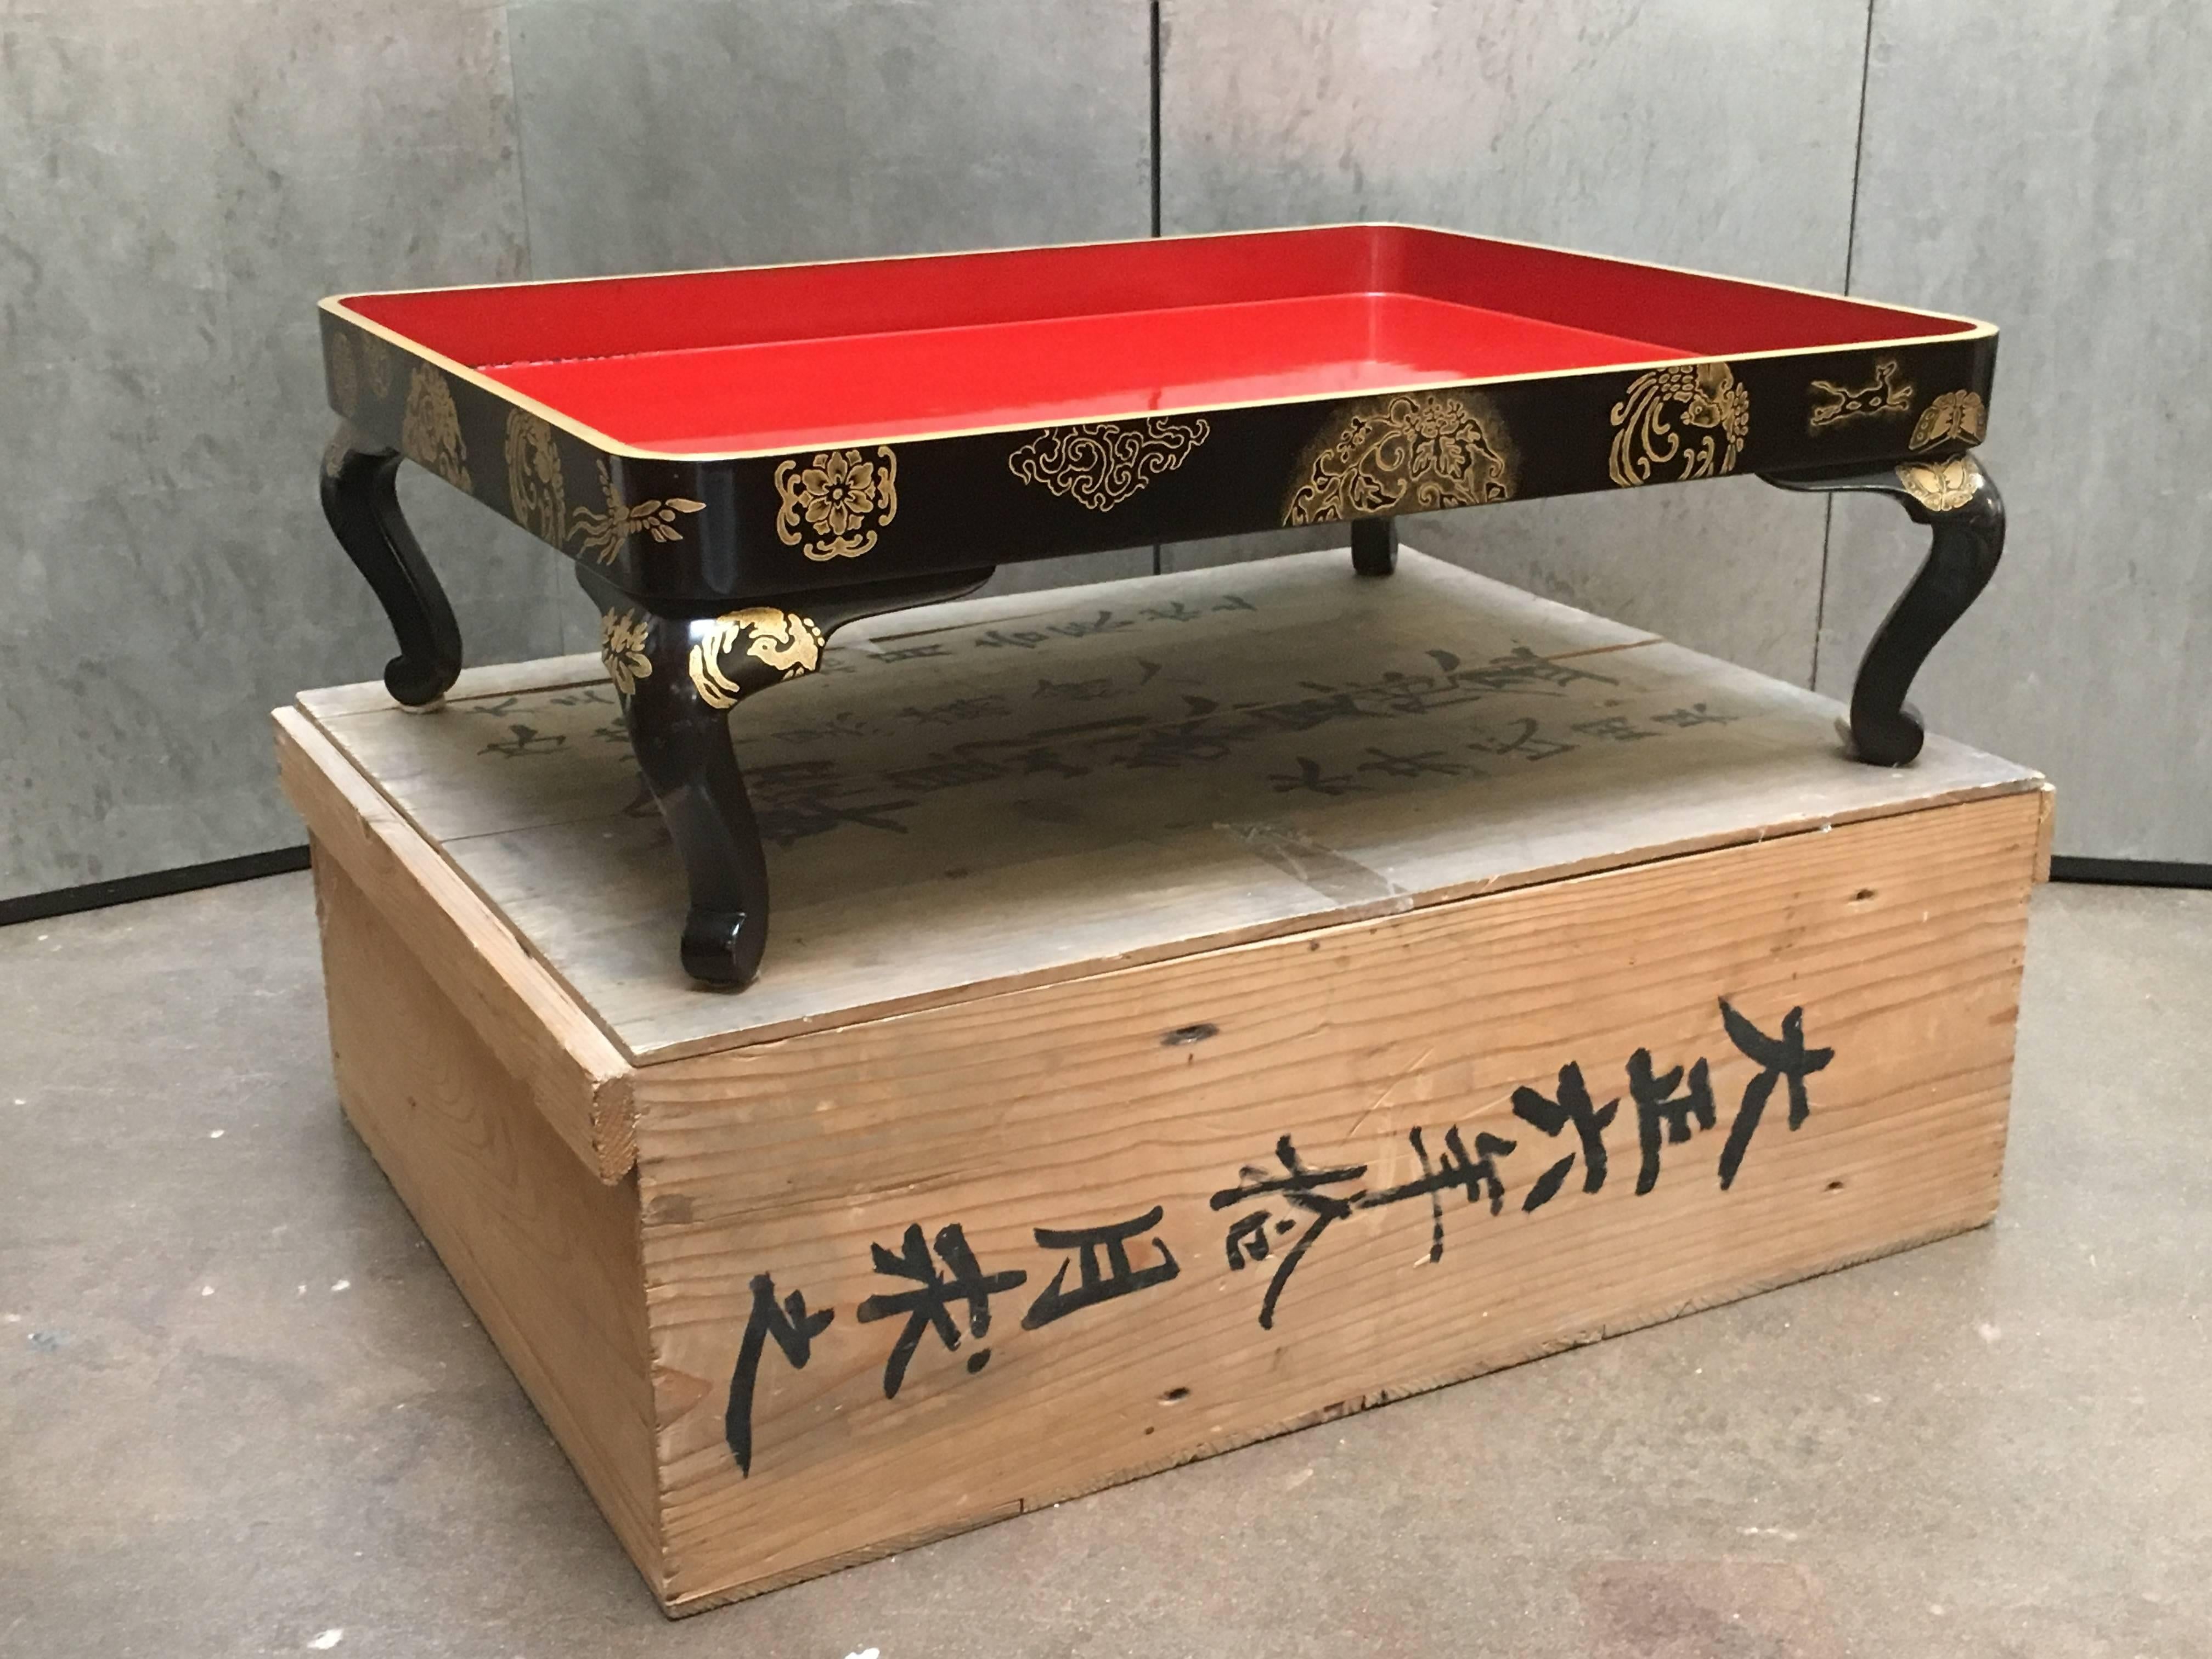 Plateau de présentation en laque rouge et noire maki-e avec boîte de rangement originale en tomobako, période Taisho, daté de 1917, Japon.

Le grand plateau de présentation repose sur des pieds cabriole et est décoré de motifs maki-e (poussière